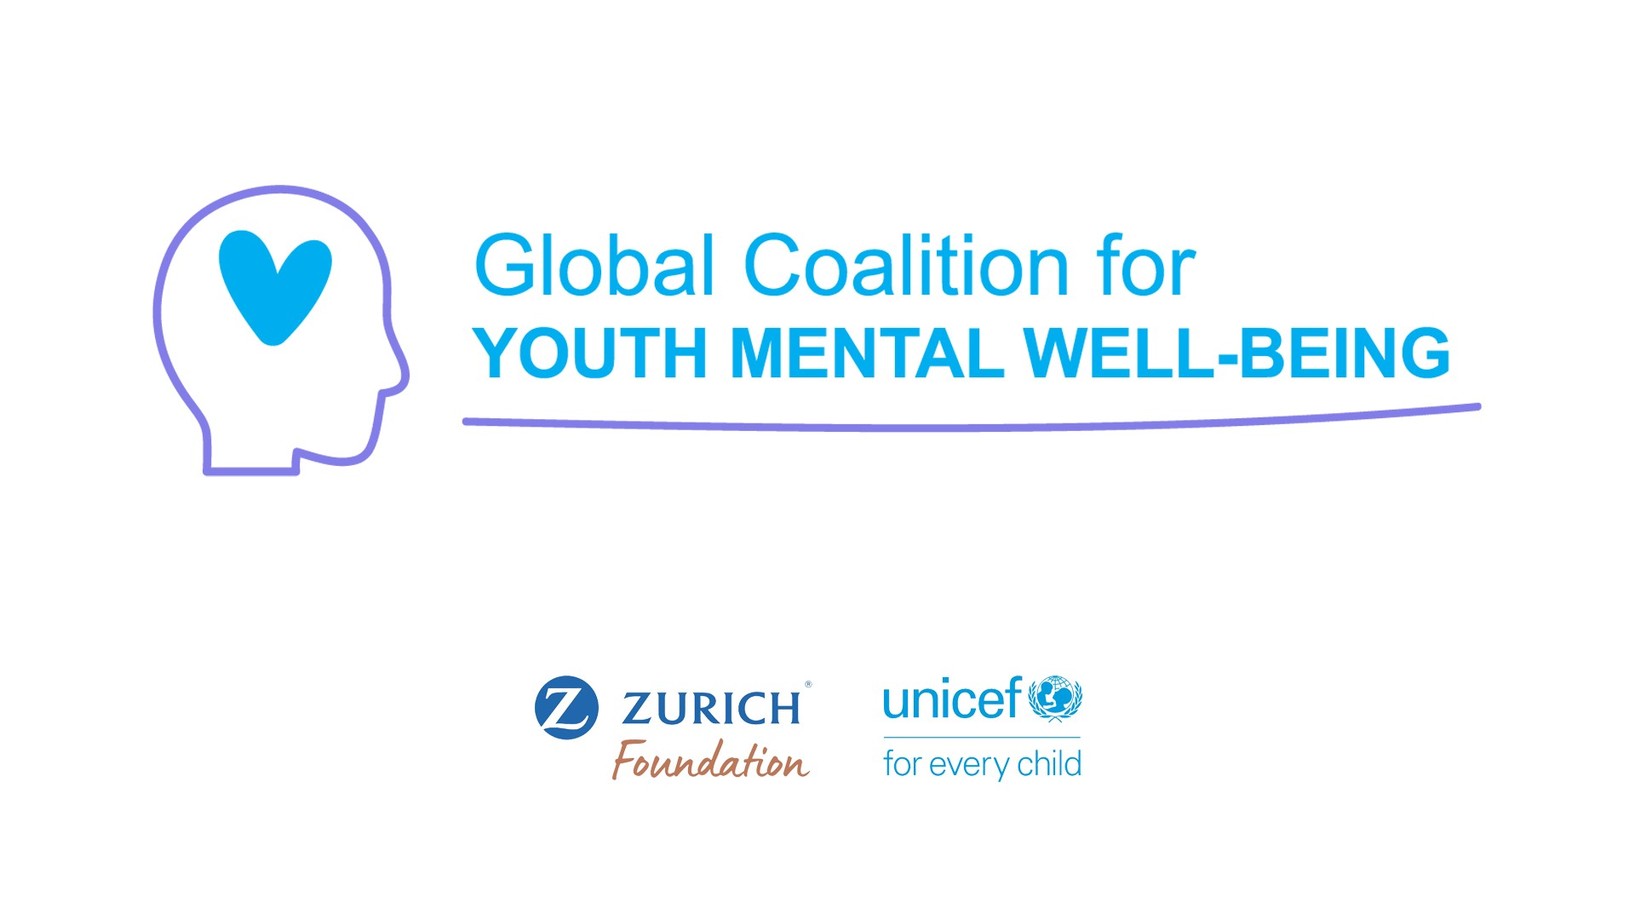 Mental Health Coalition Z Zurich Foundation